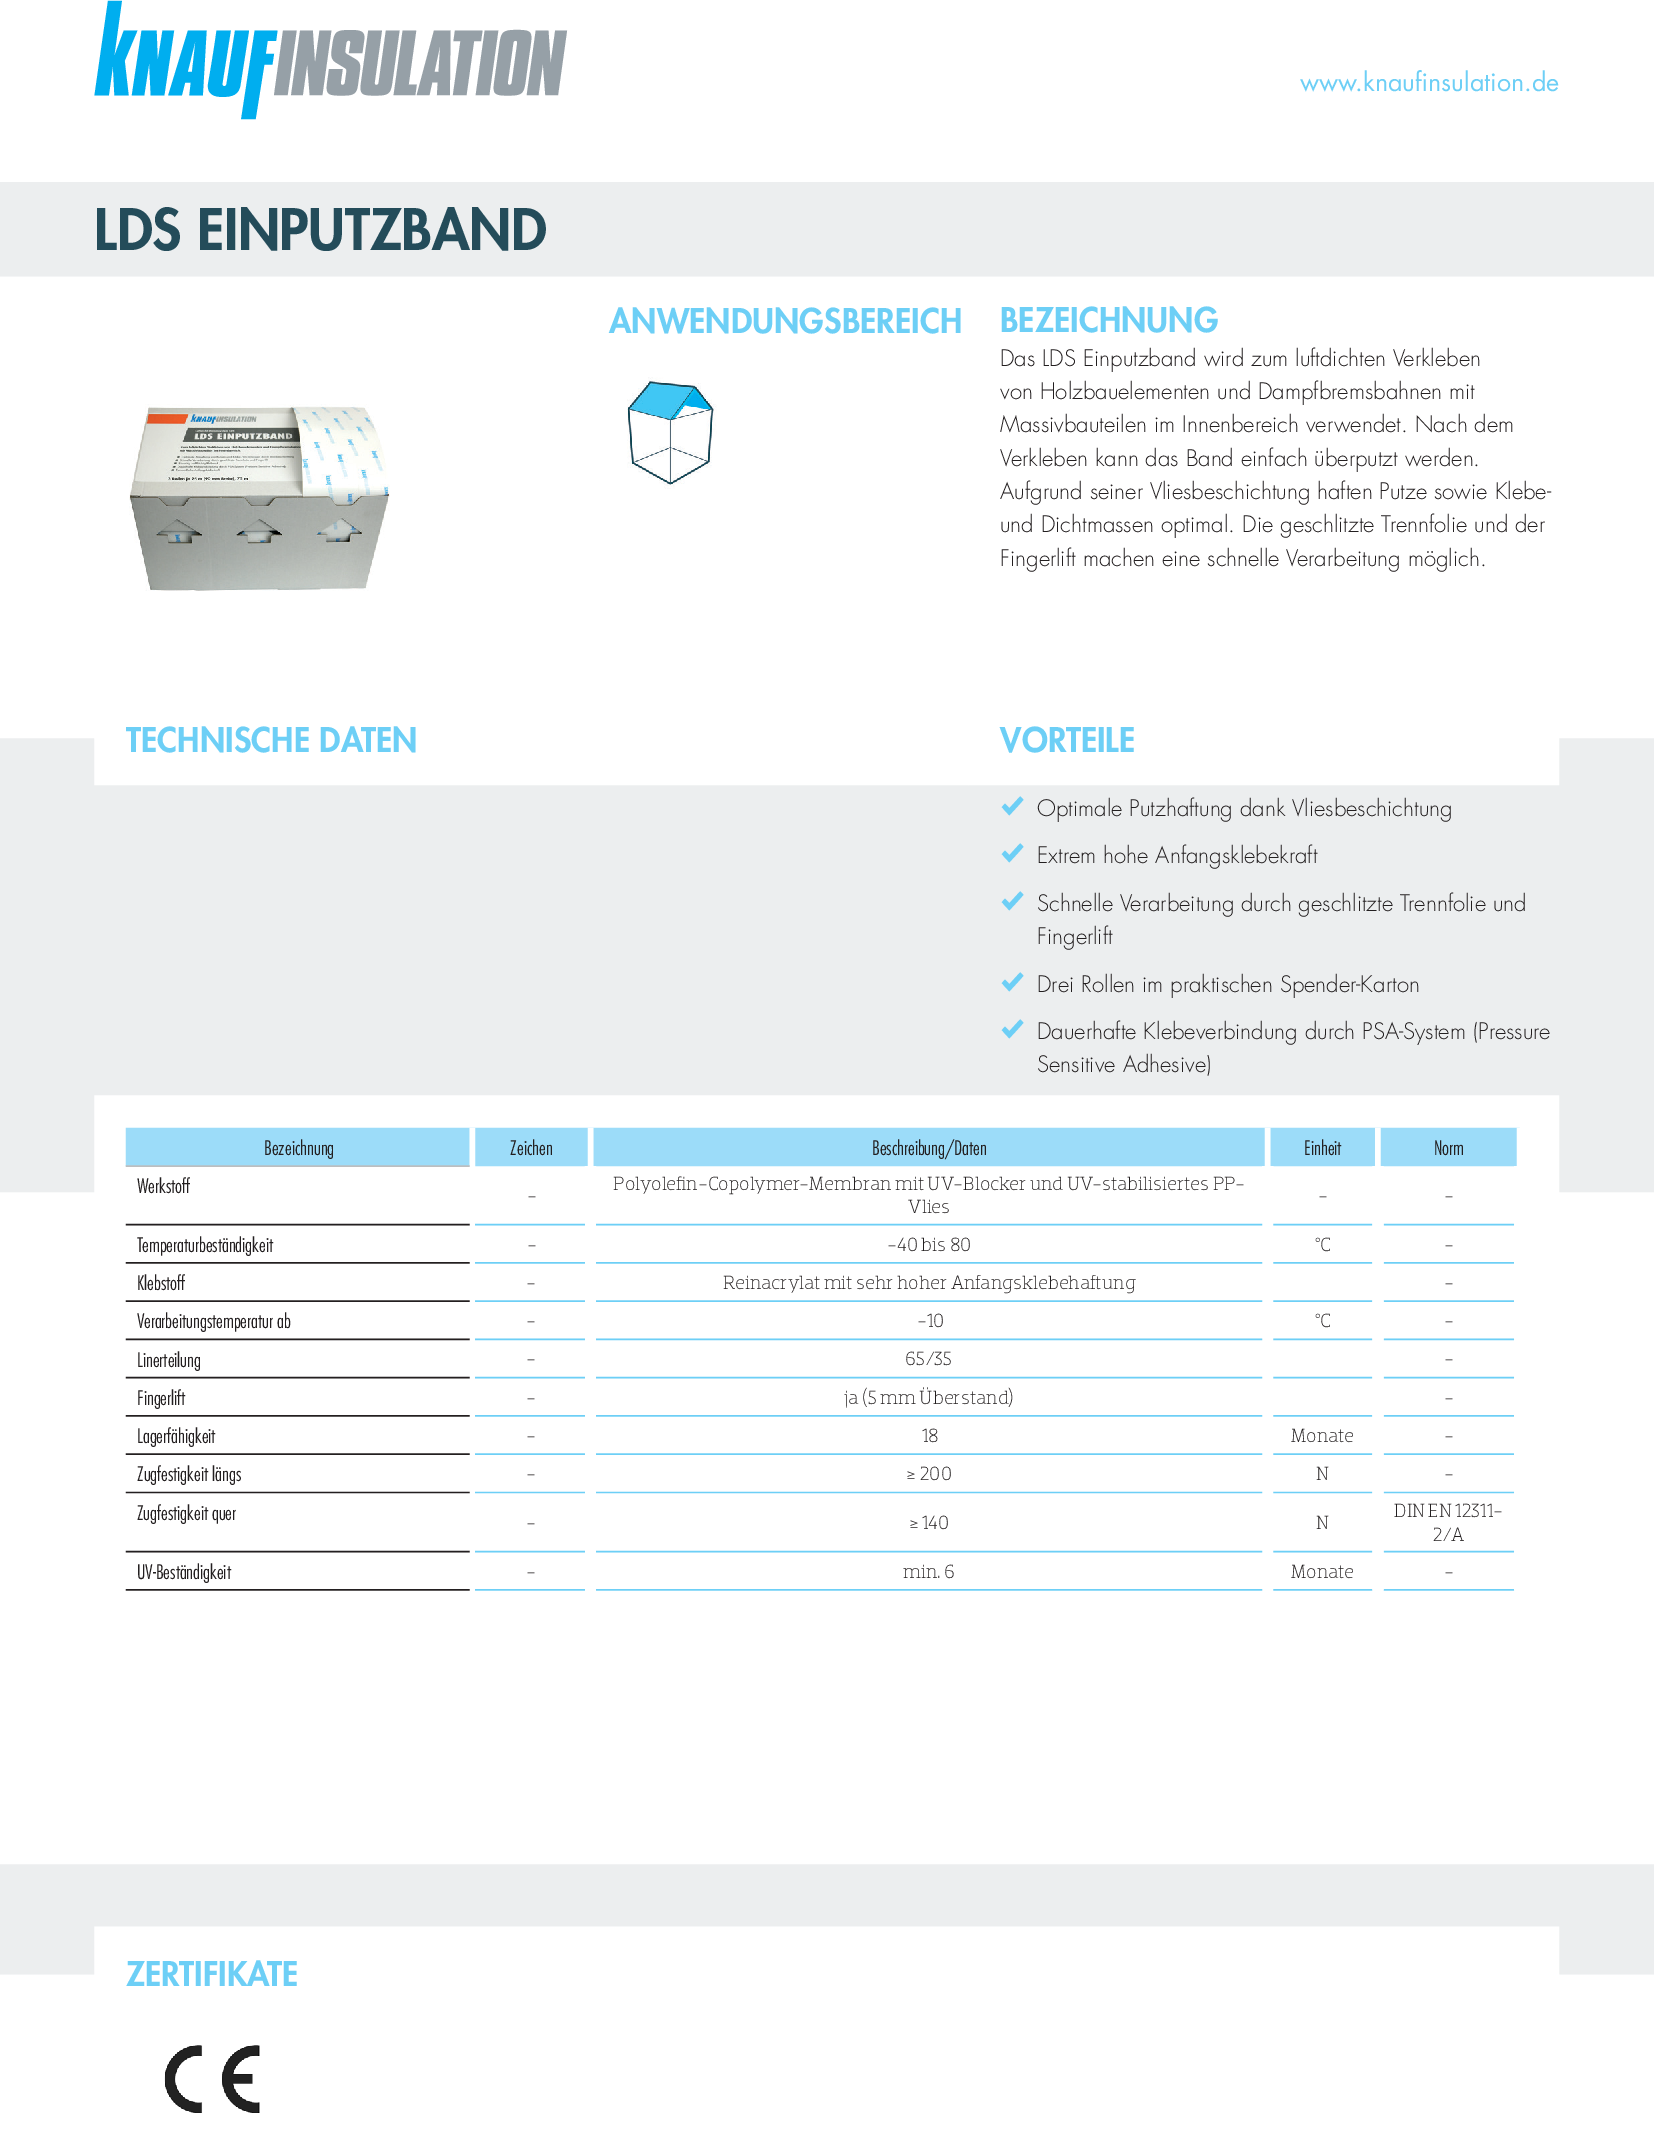 Datenblatt Knauf Insulation LDS Einputzband